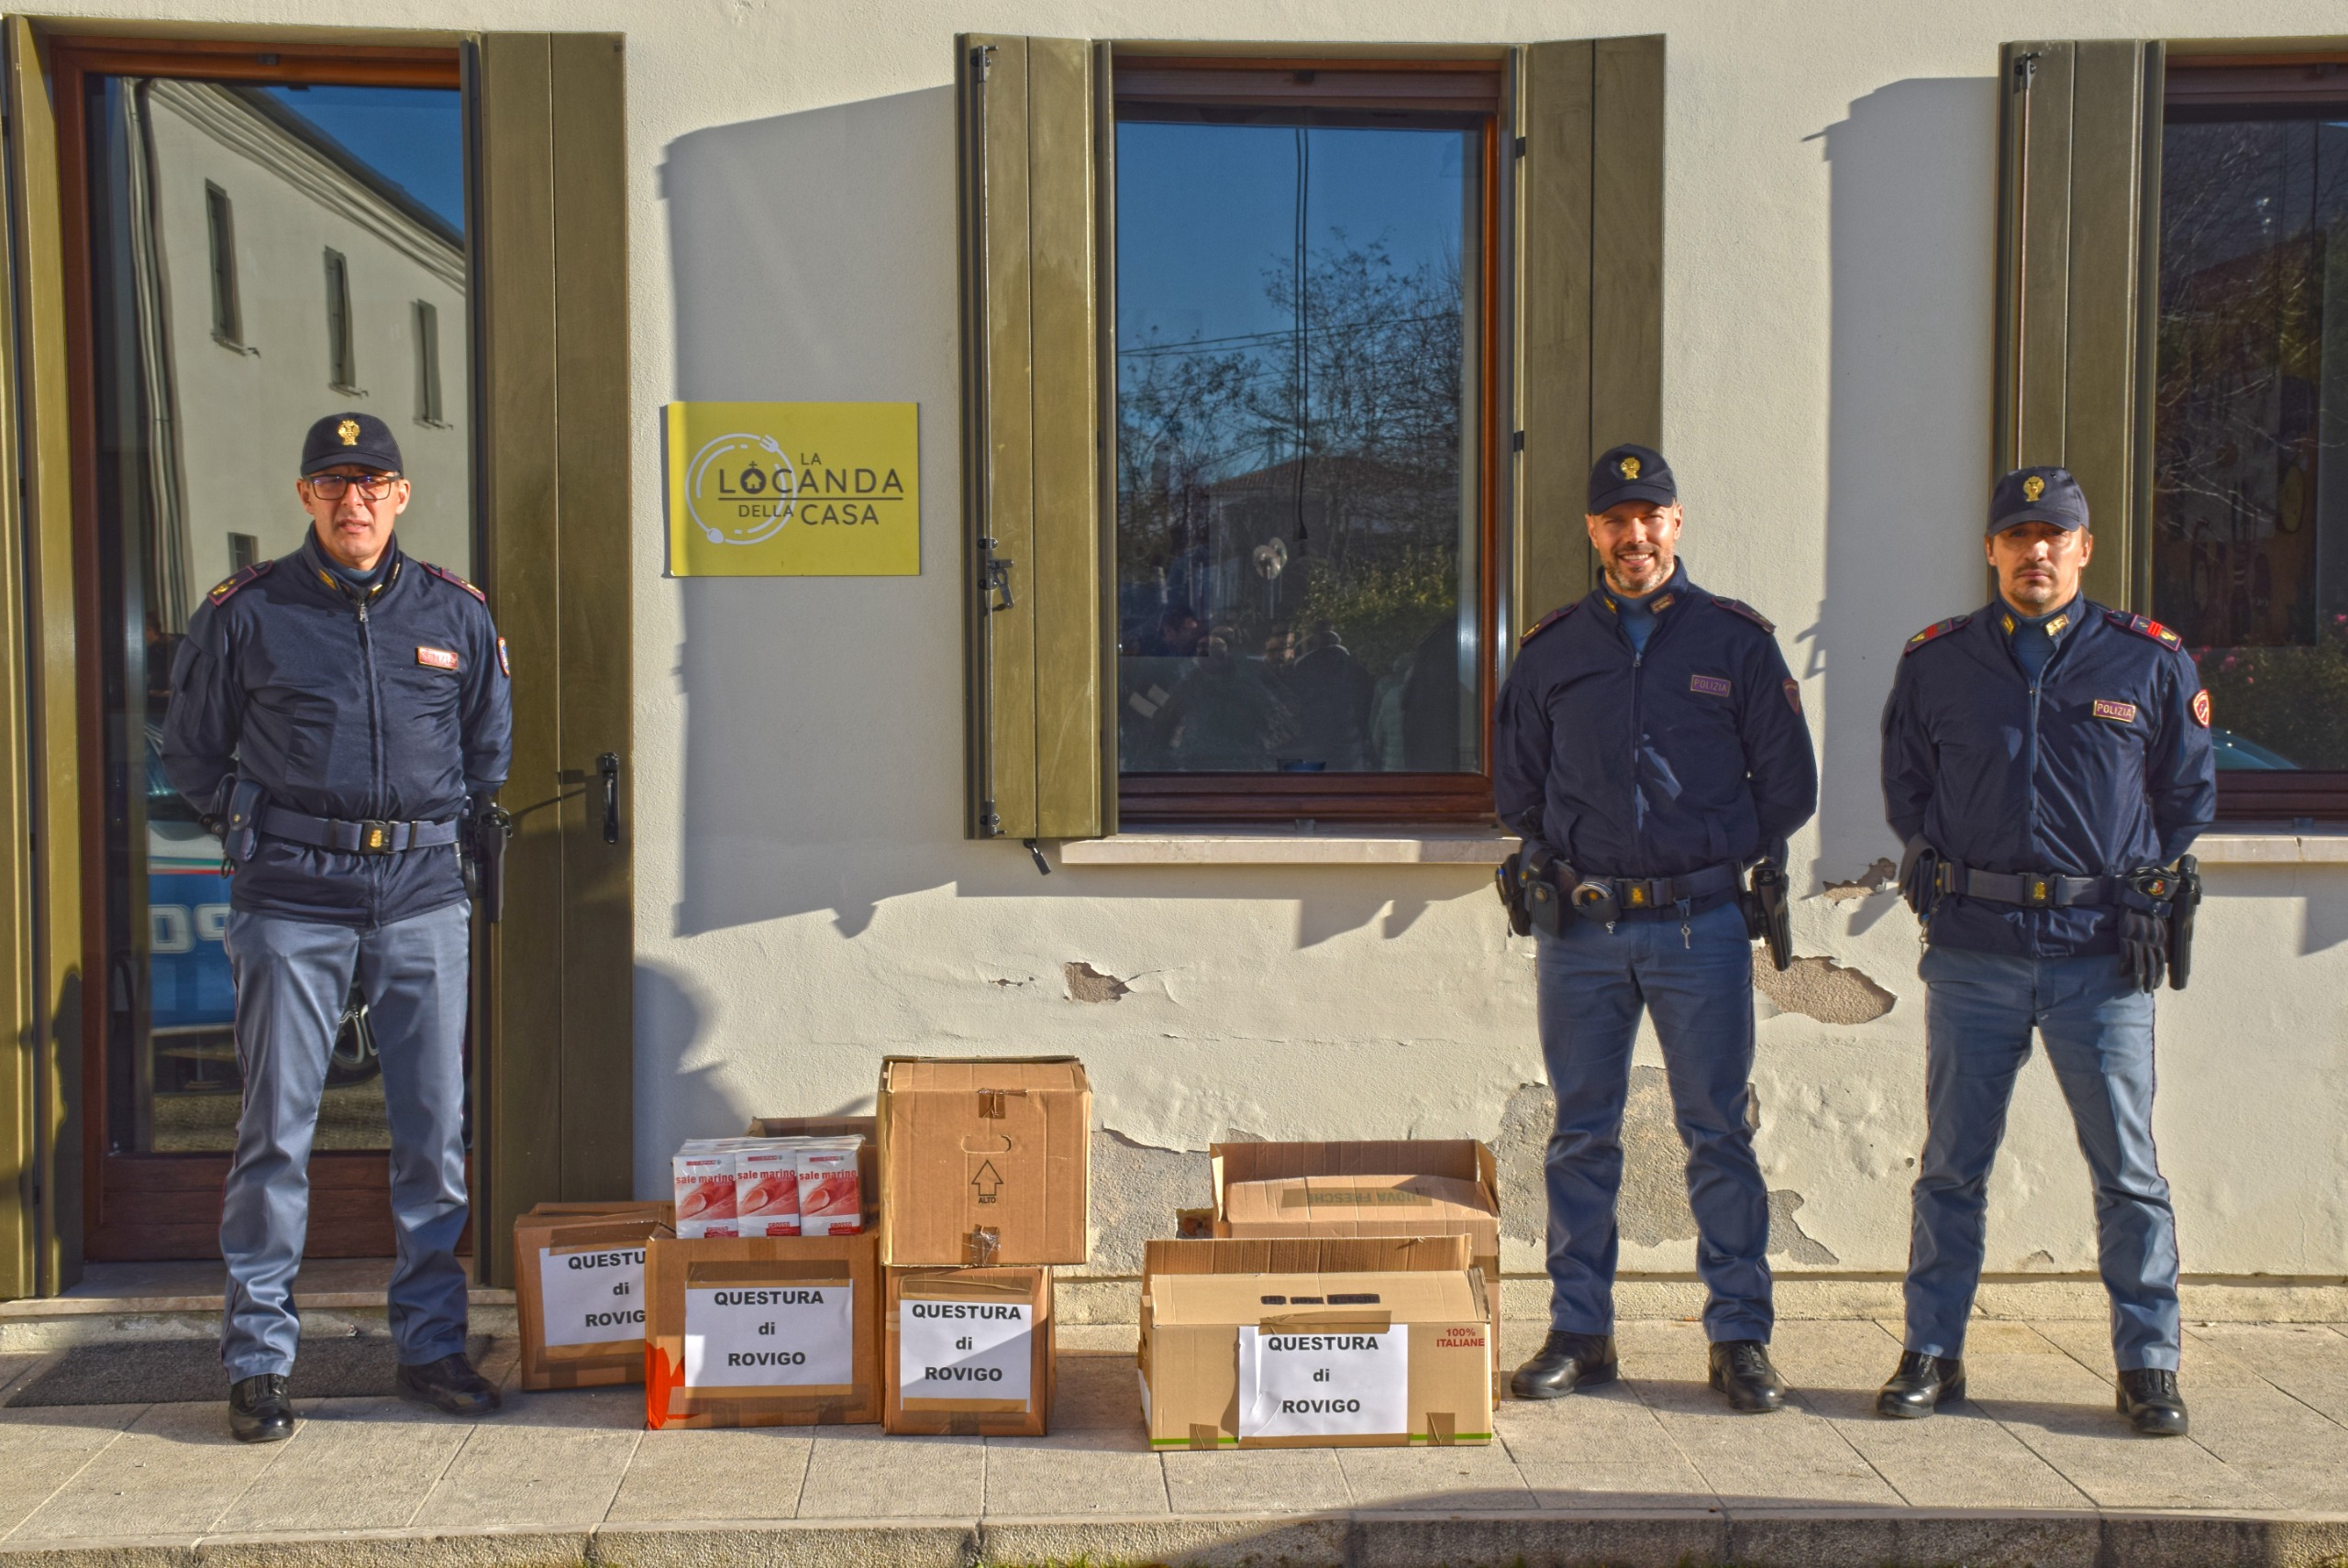 La Questura di Rovigo ha donato generi alimentari alla “Caritas” rodigina